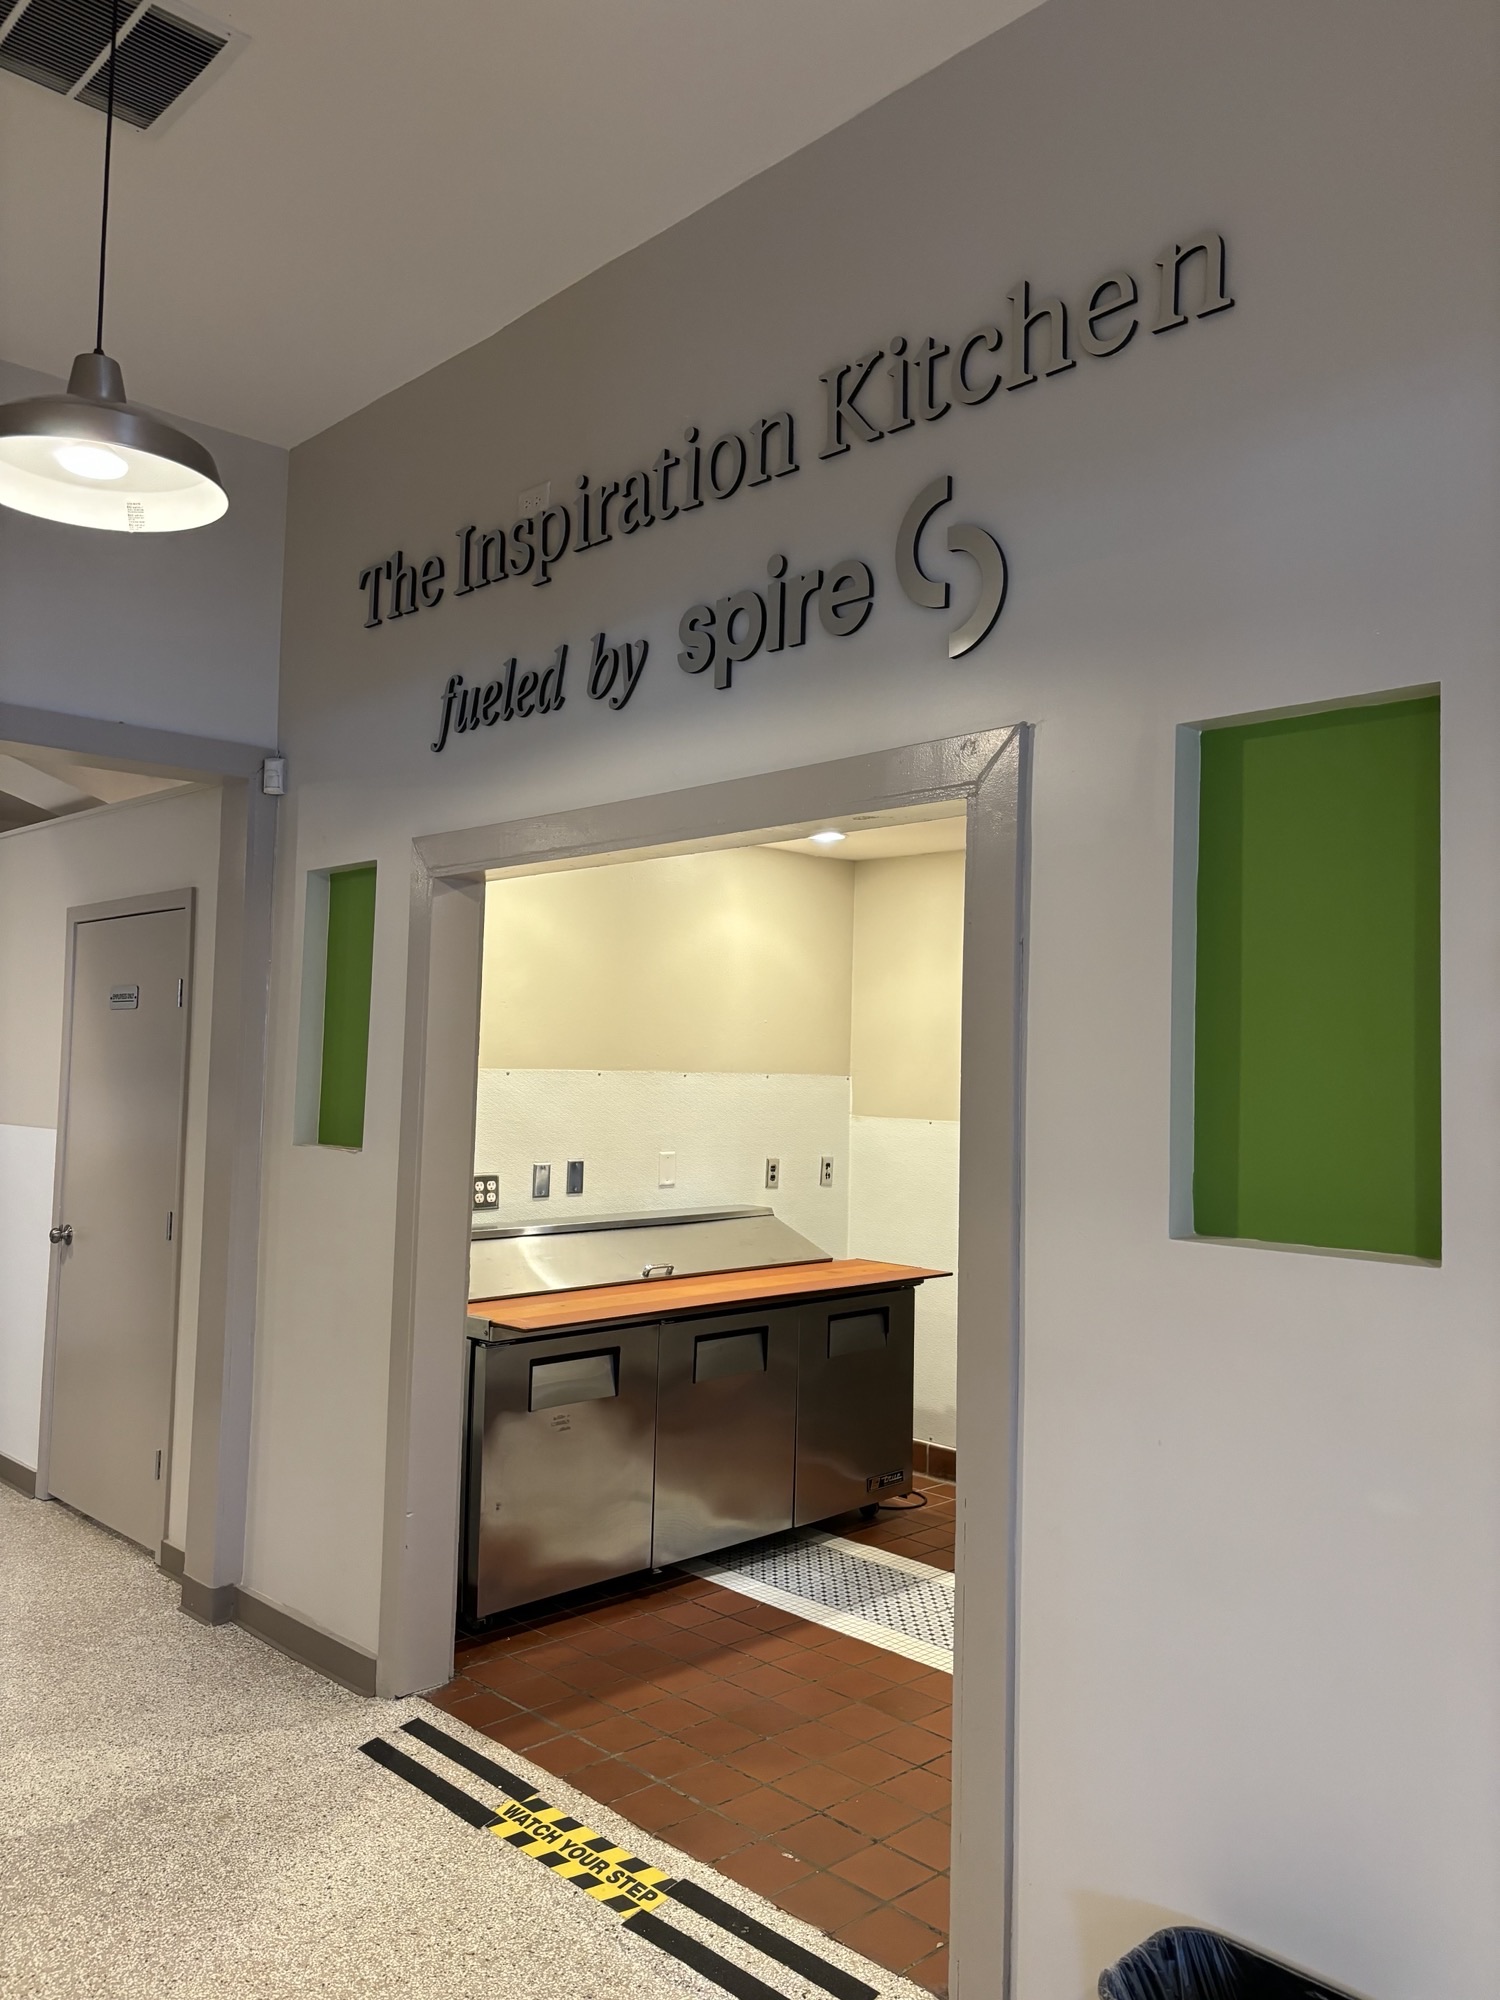 Inspiration Kitchen signage